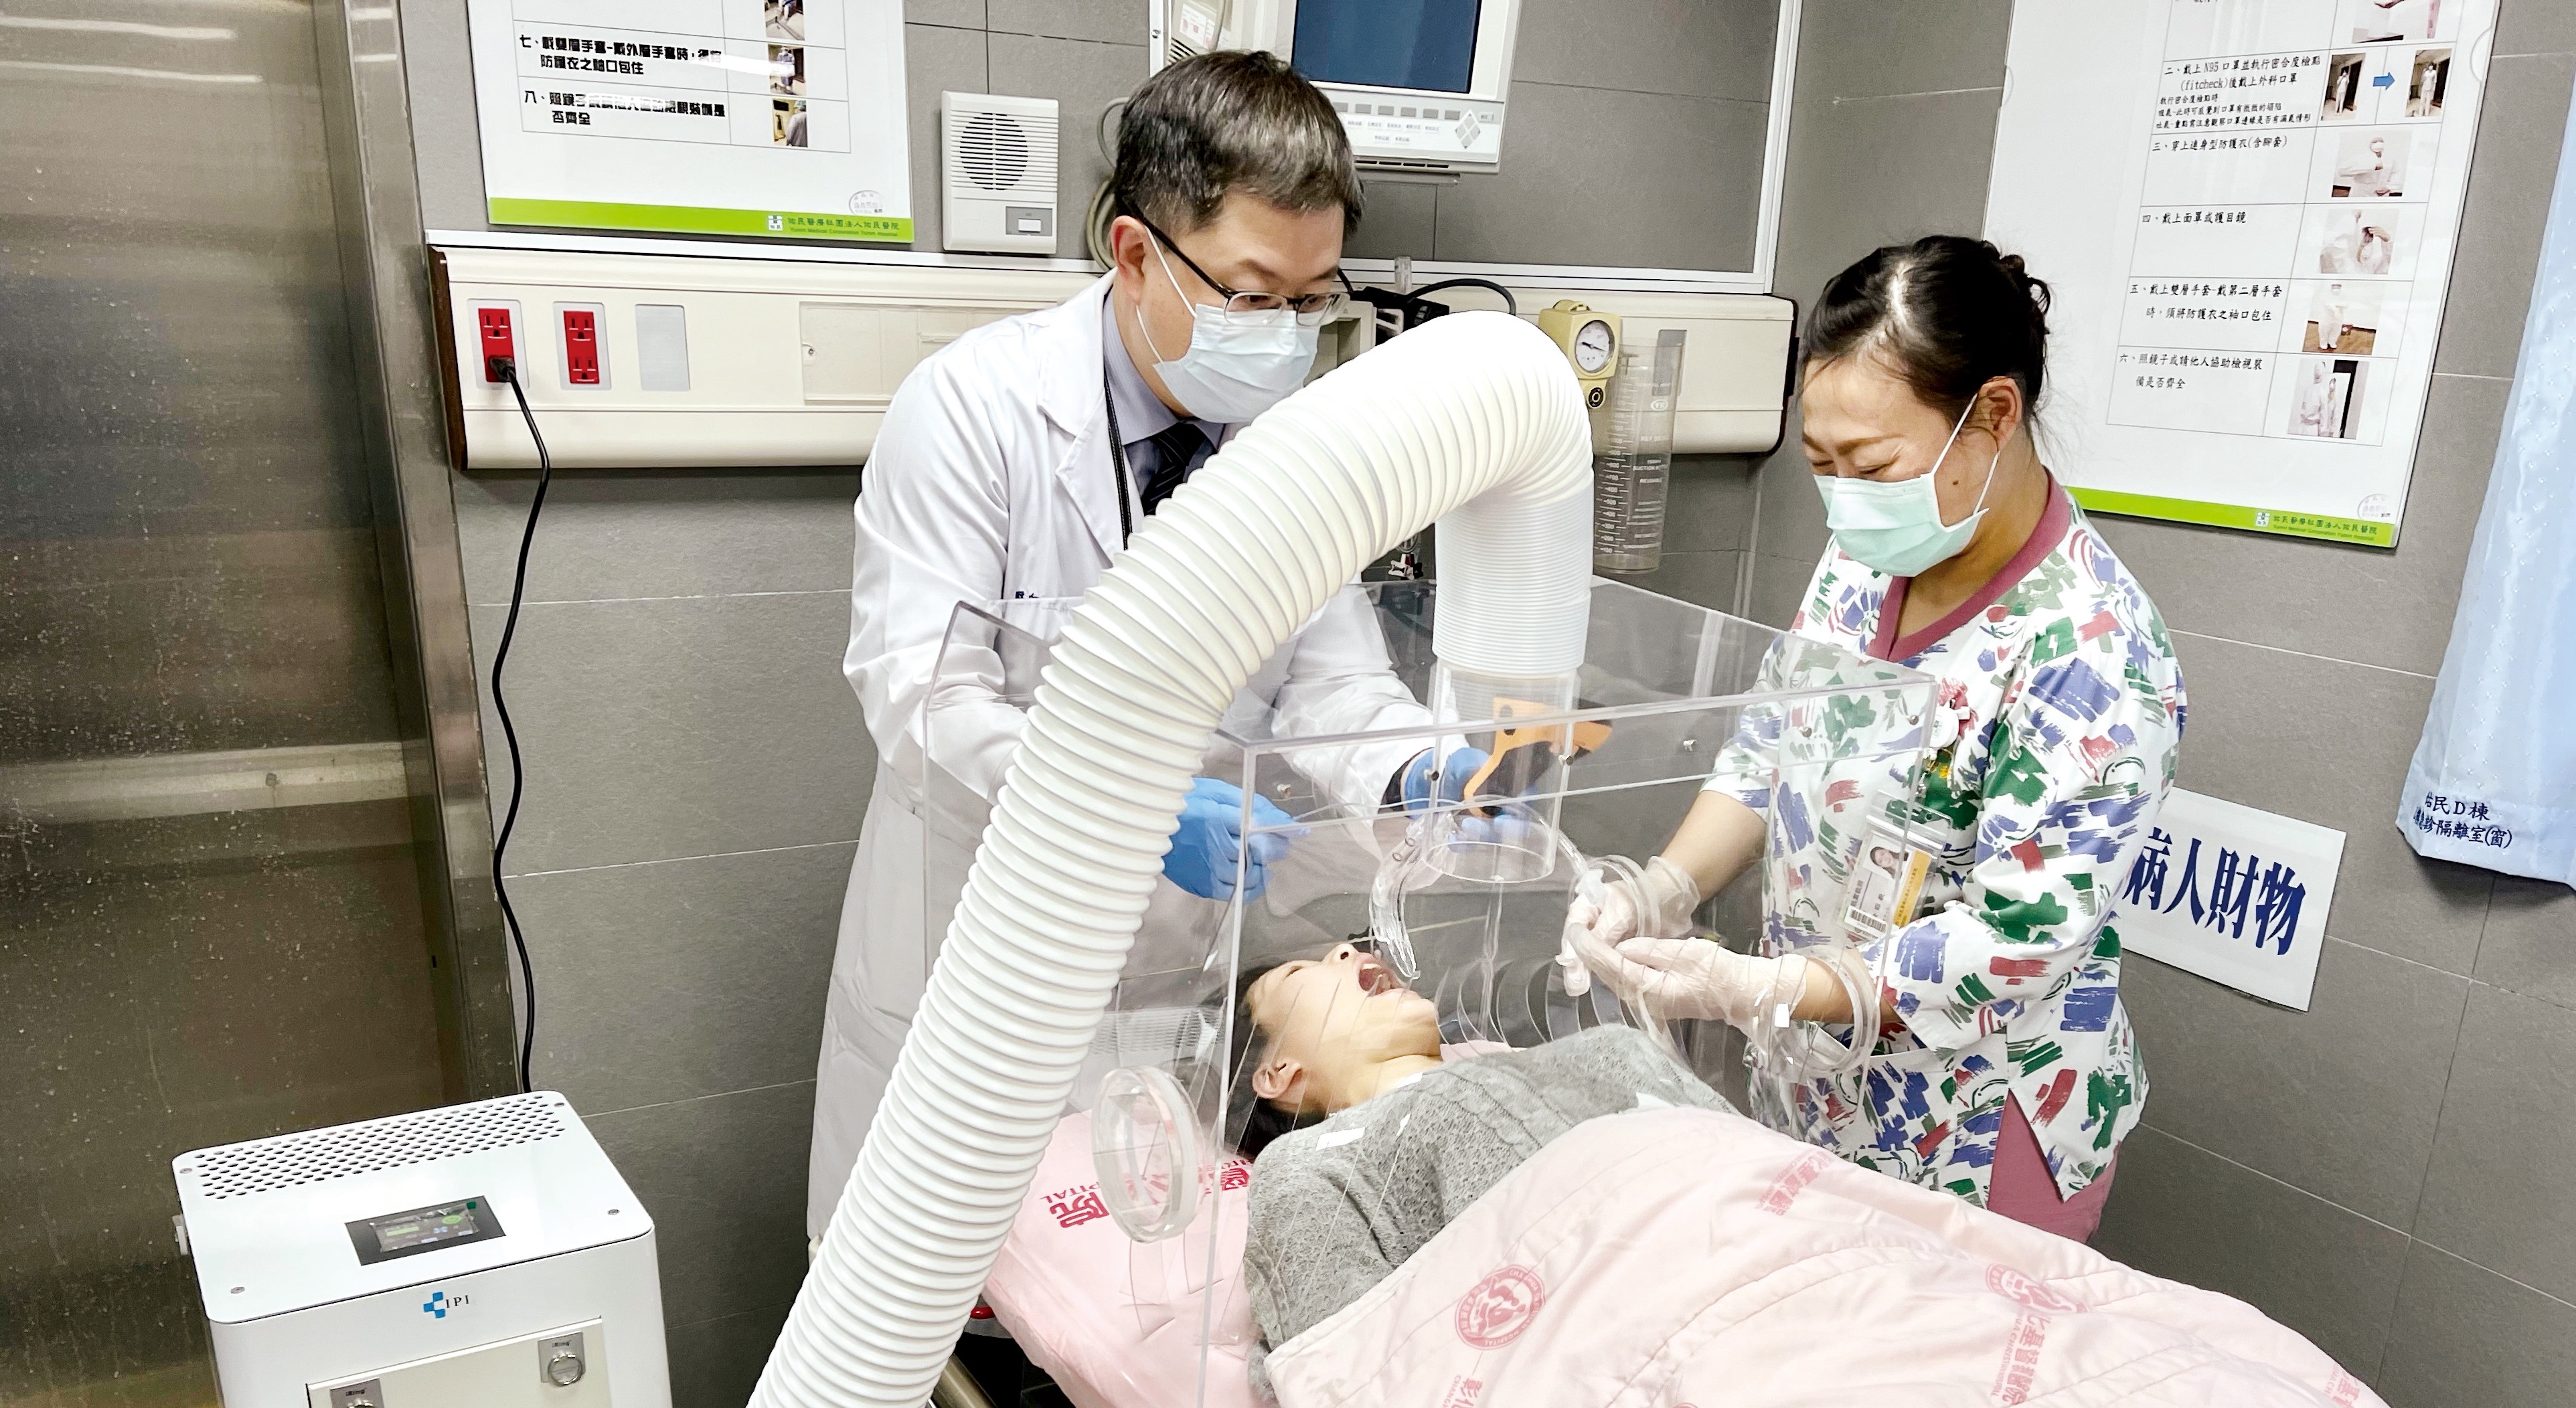 工研院與南投佑民醫院2020年3月合作開發負壓殺菌插管罩